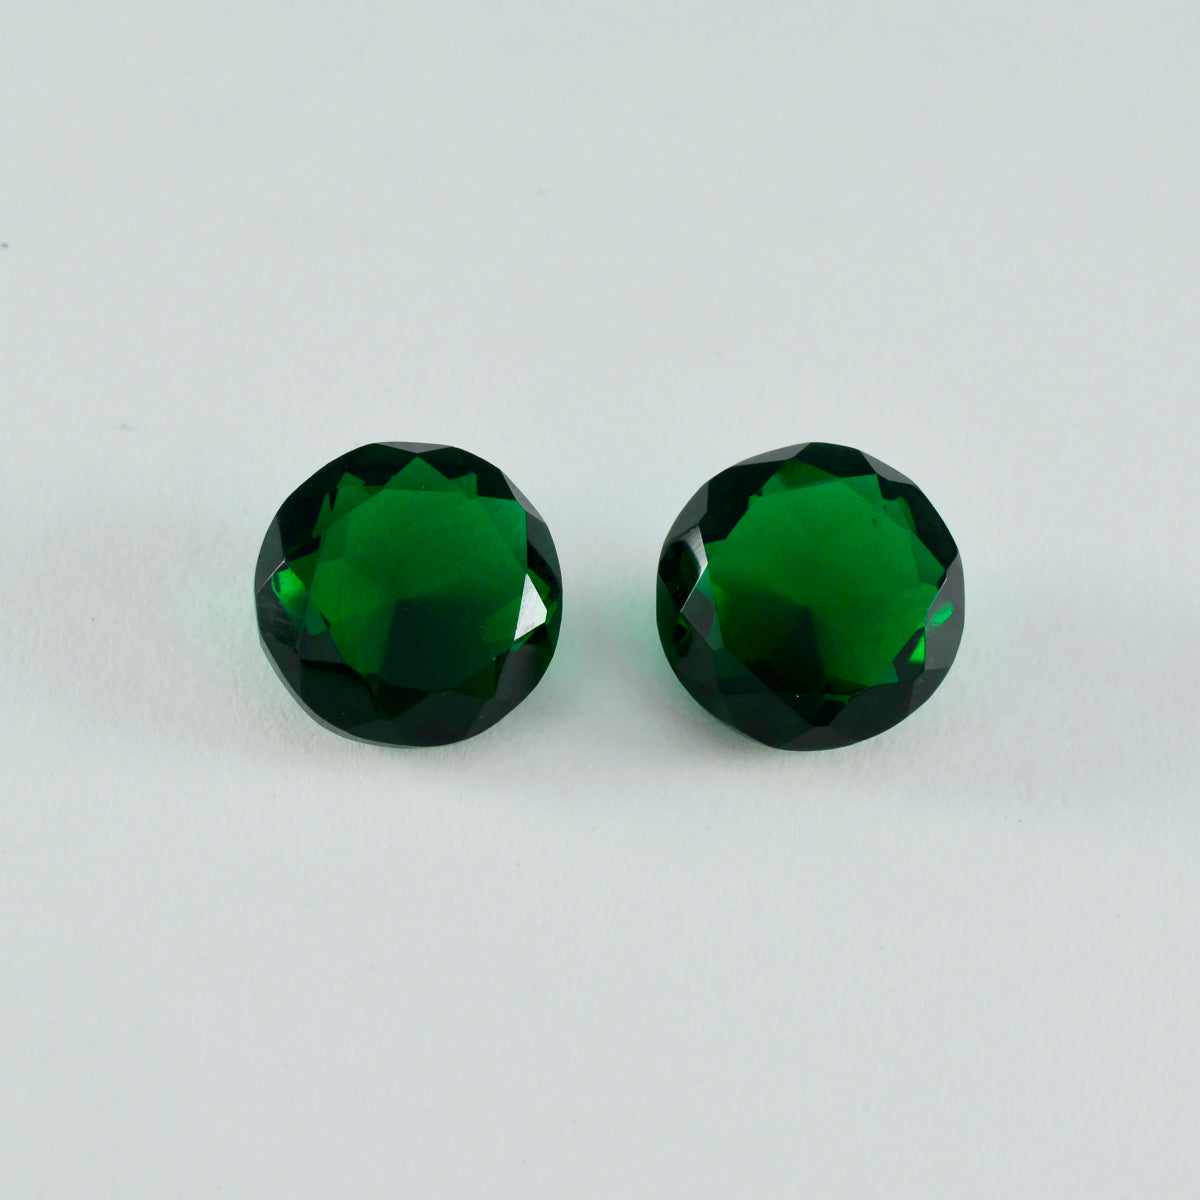 Riyogems 1 pieza Esmeralda verde CZ facetada 14x14mm forma redonda hermosa piedra de calidad